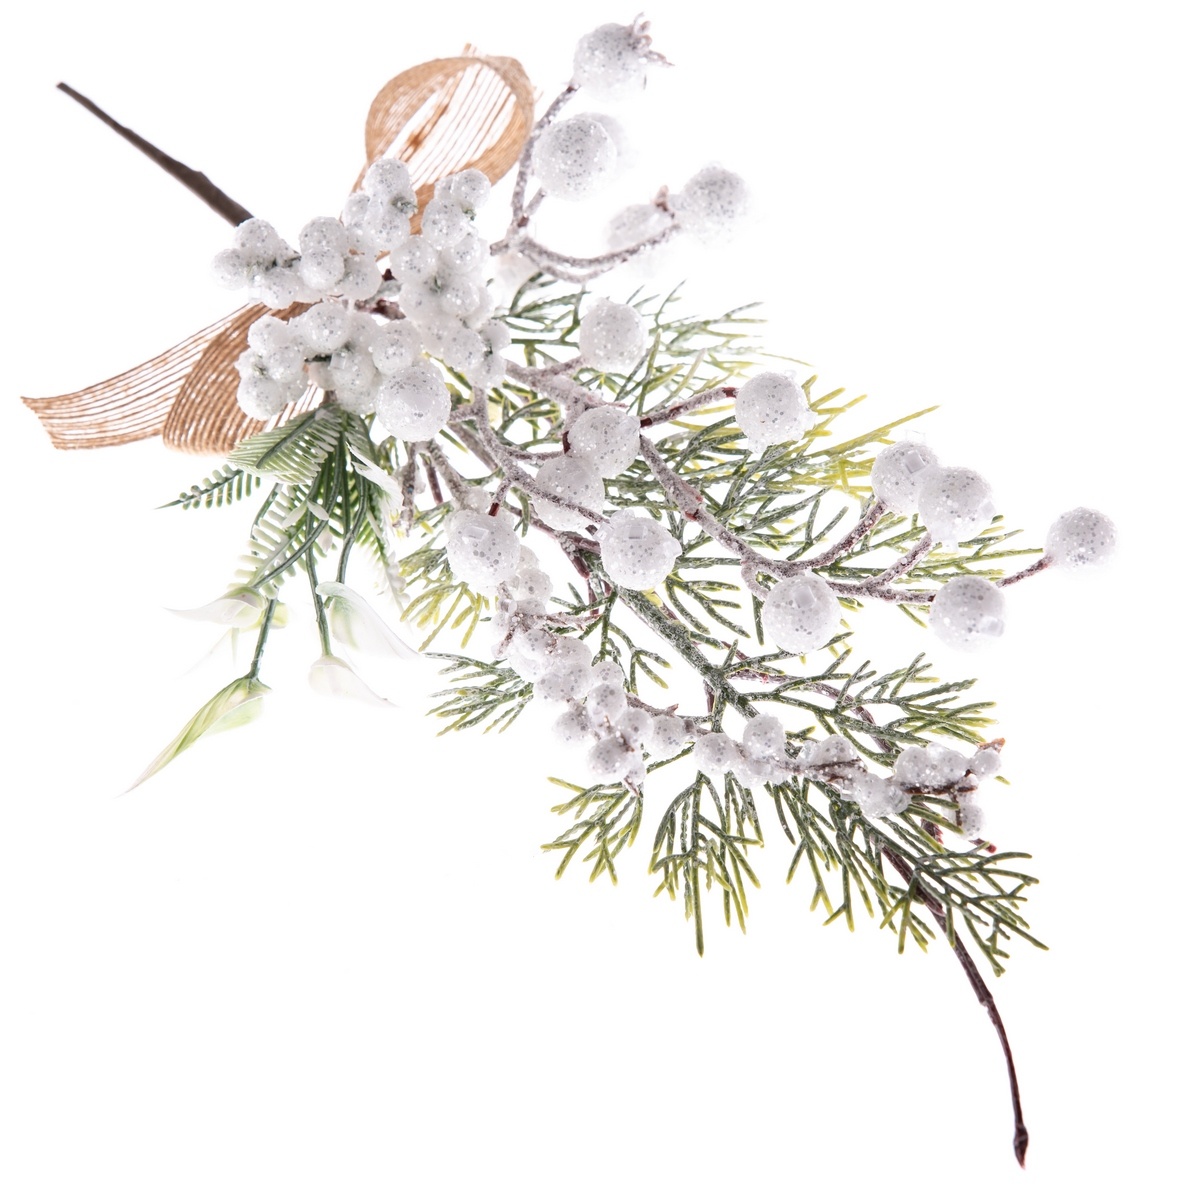 Dekoračná vianočná vetvička s bielymi bobuľami, 8 x 35 x 6 cm